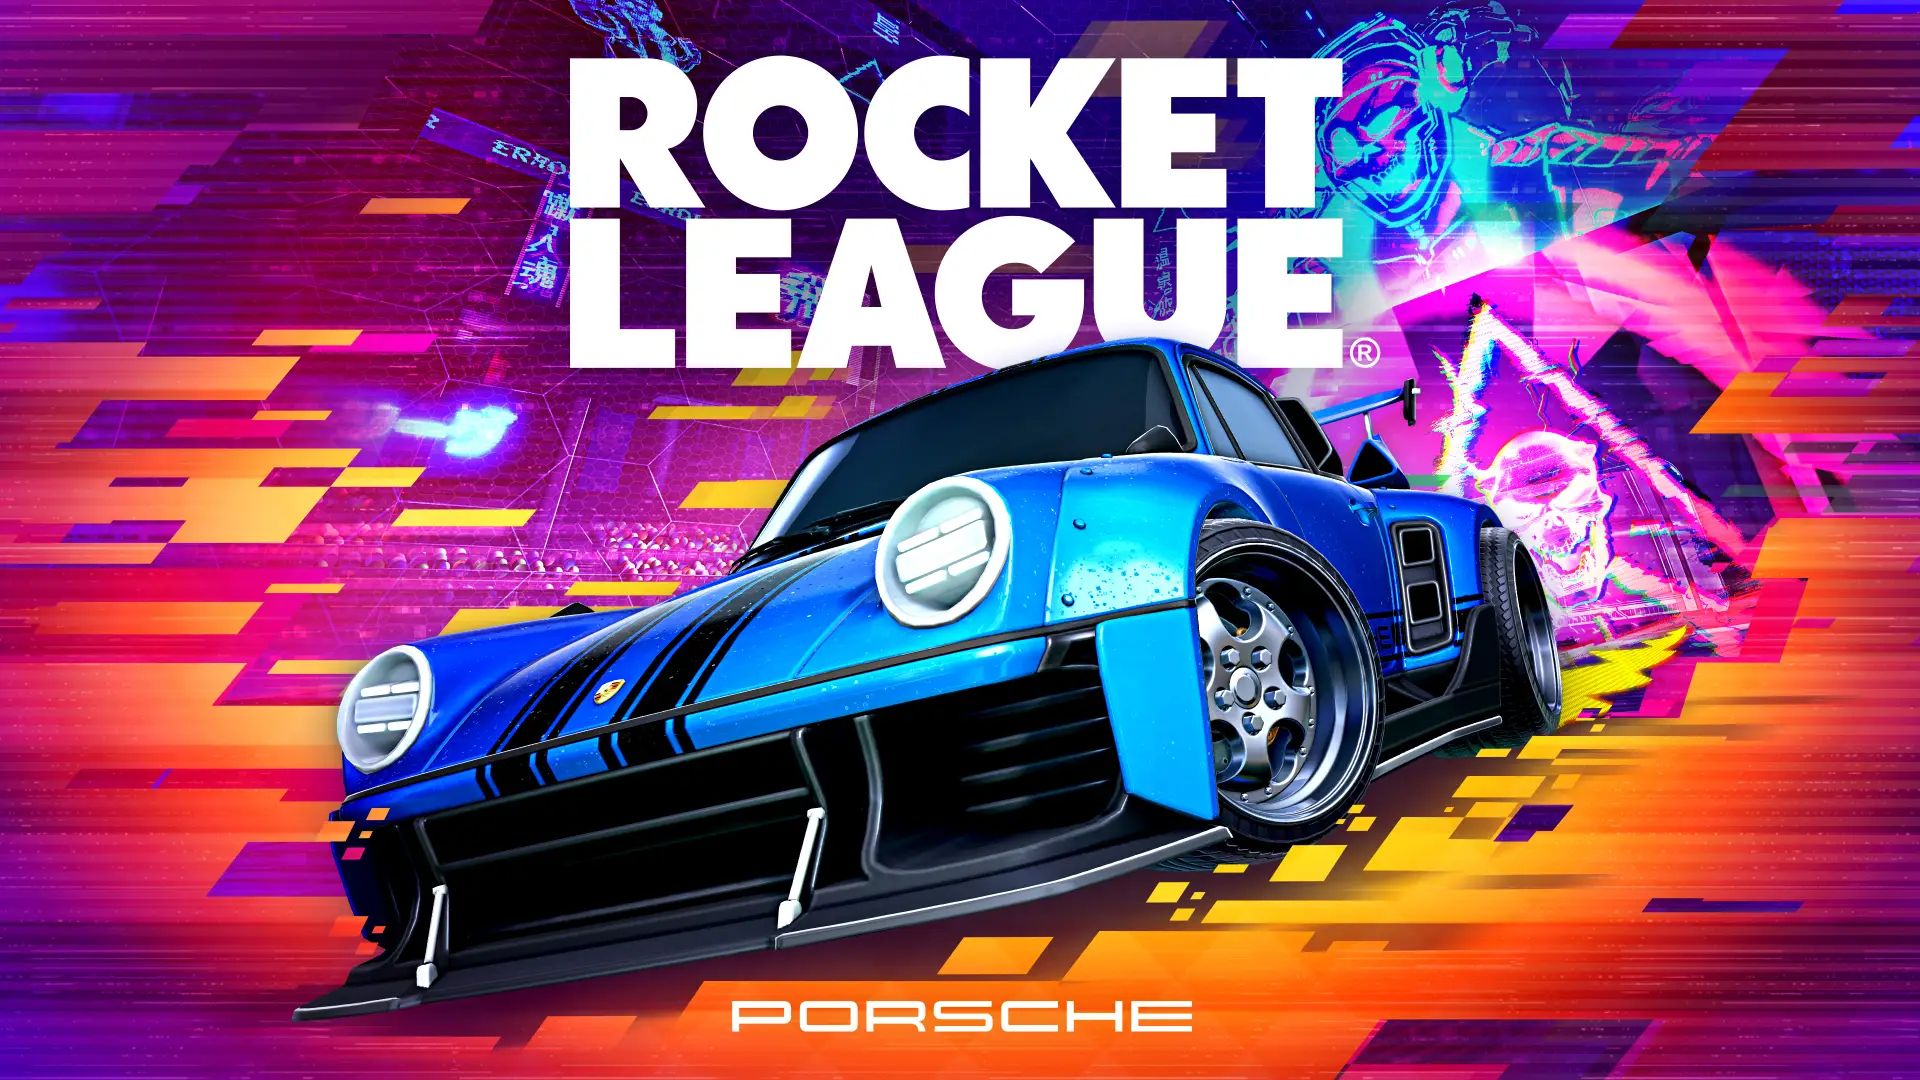 Arte oficial del pase premium de Fortnite Rocket League con el Porsche 911 Turbo Car